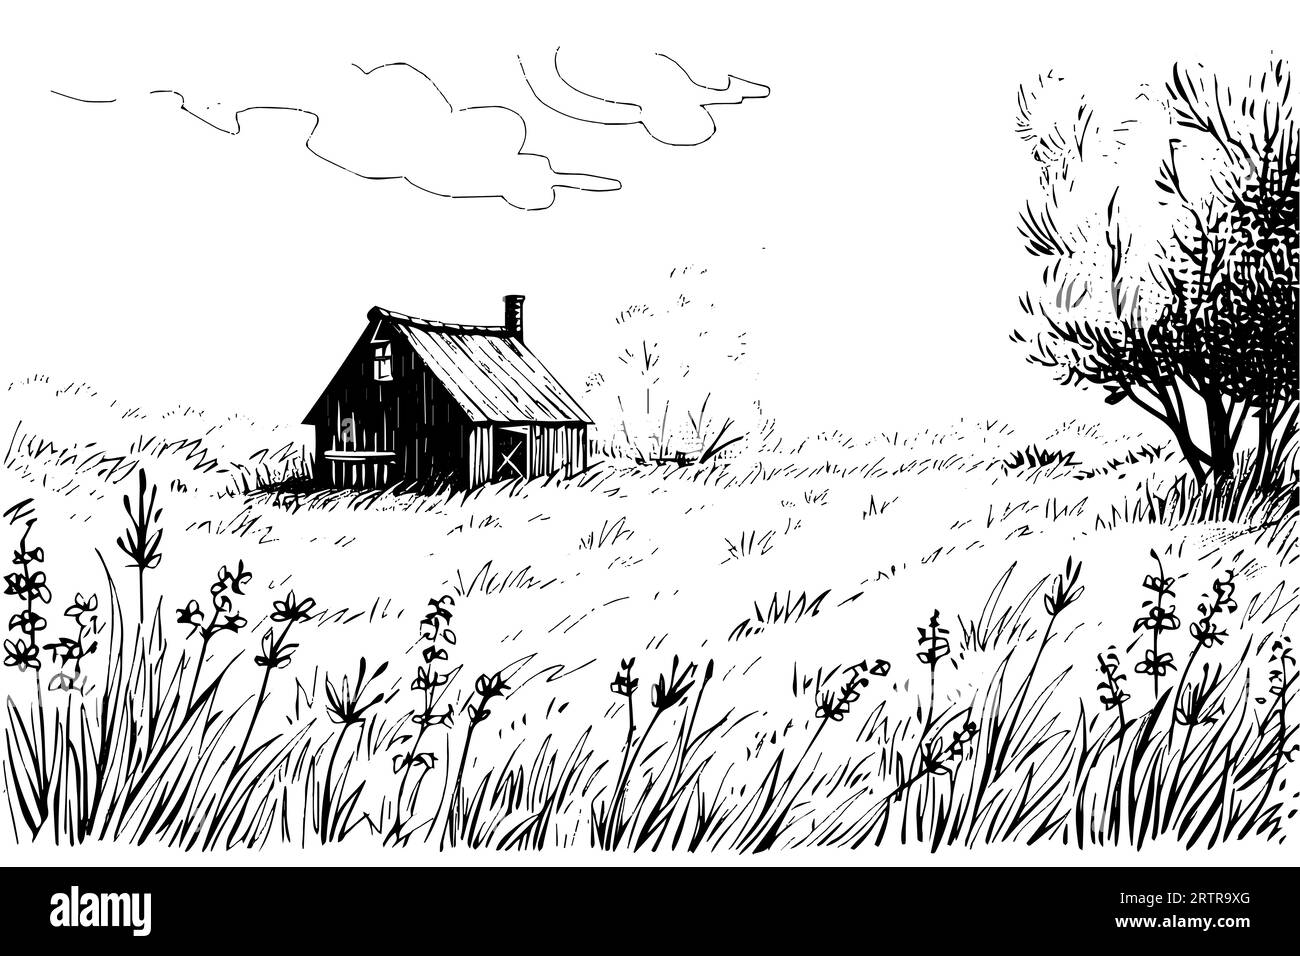 Paesaggio rurale con una fattoria in stile incisione. Illustrazione vettoriale disegnata a mano. Illustrazione Vettoriale